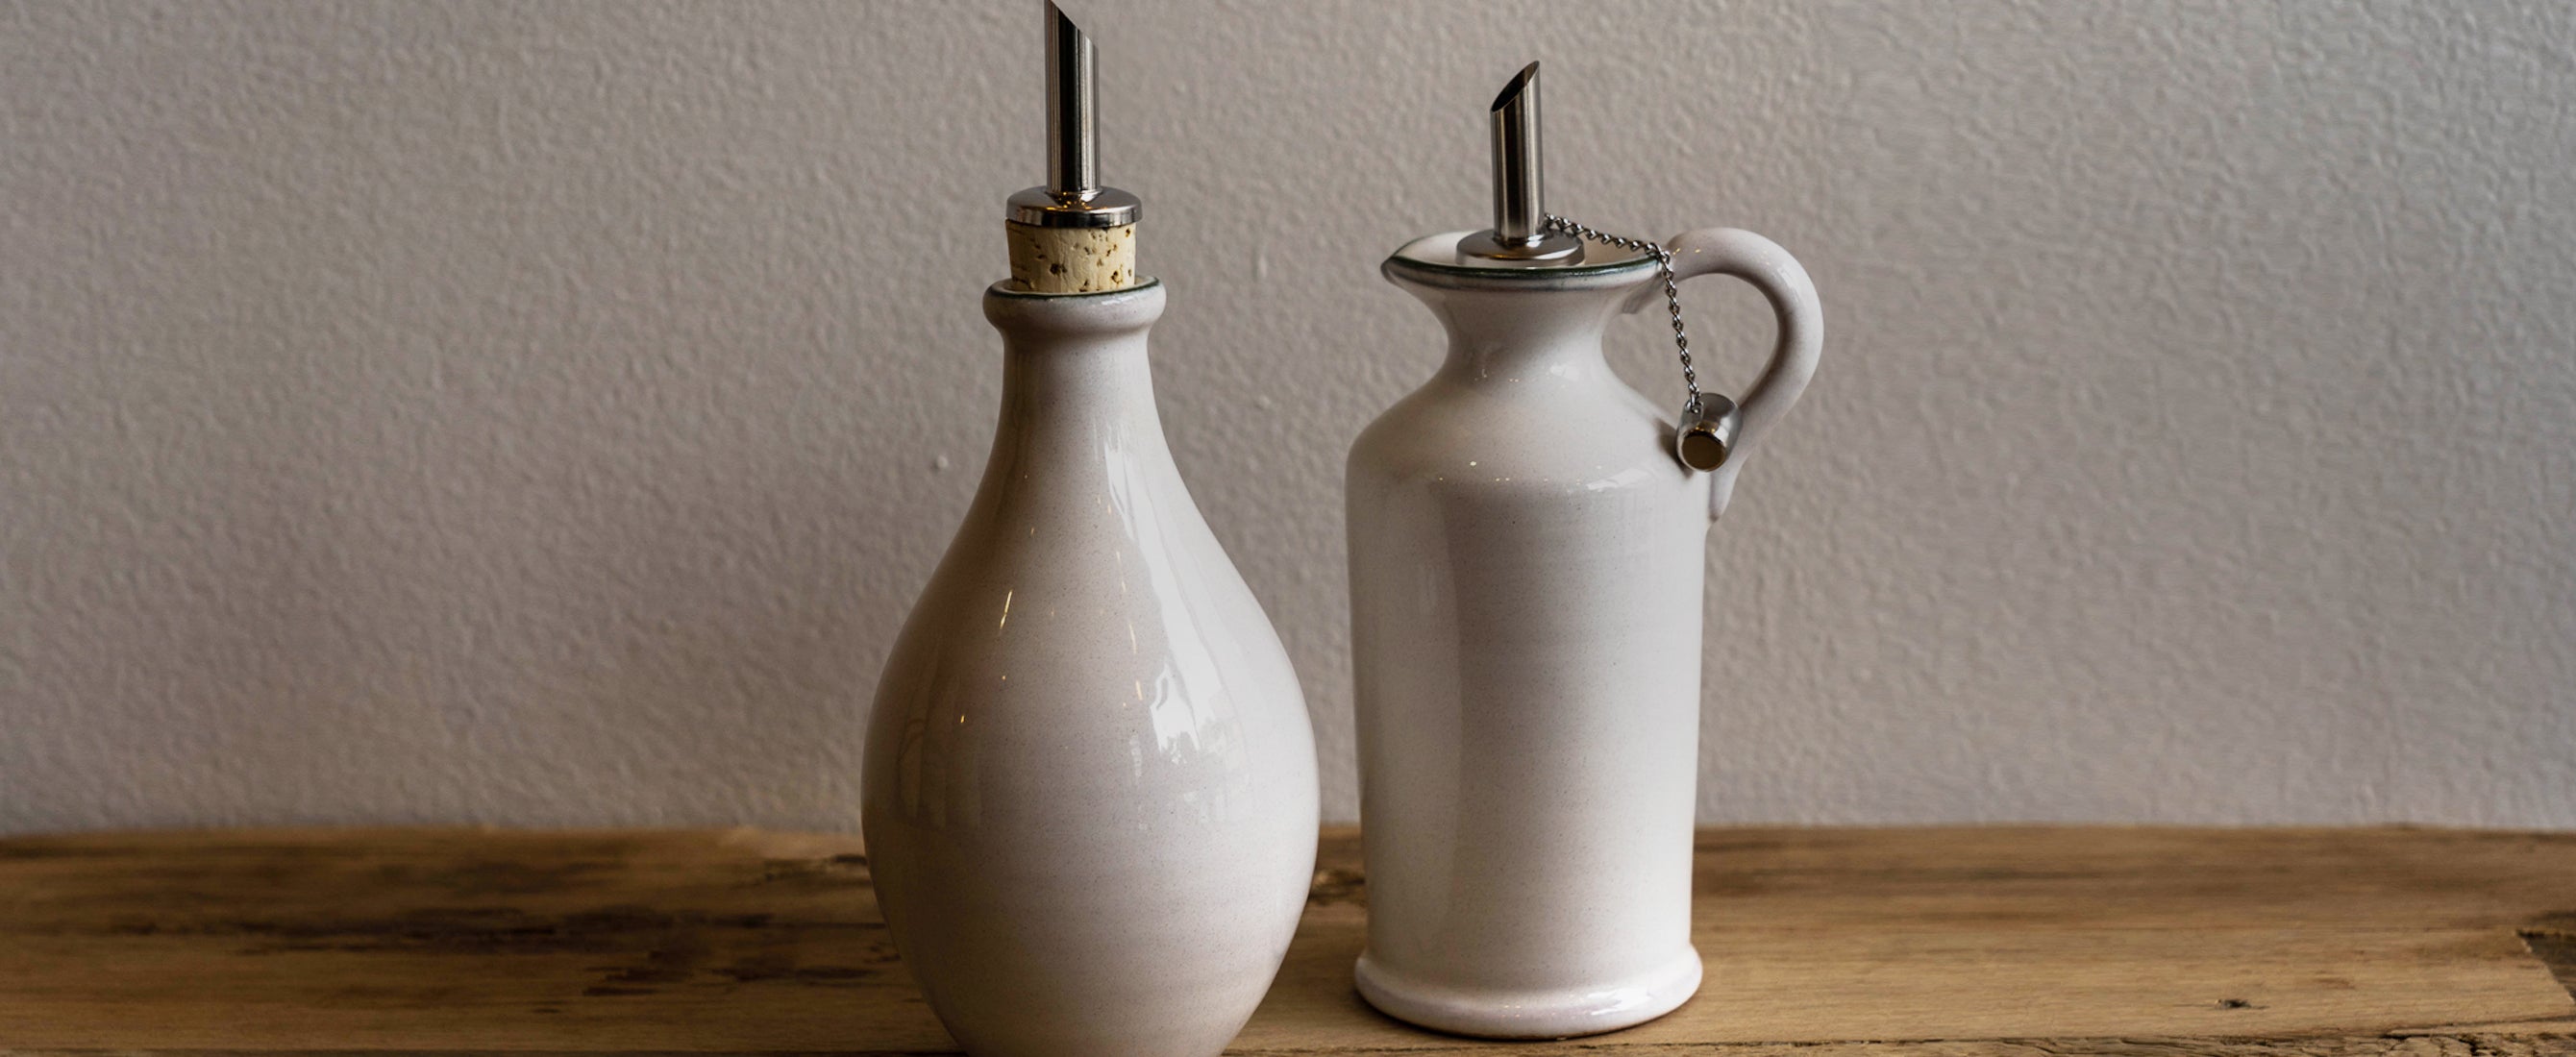 Haven & Key White Ceramic Oil Bottle